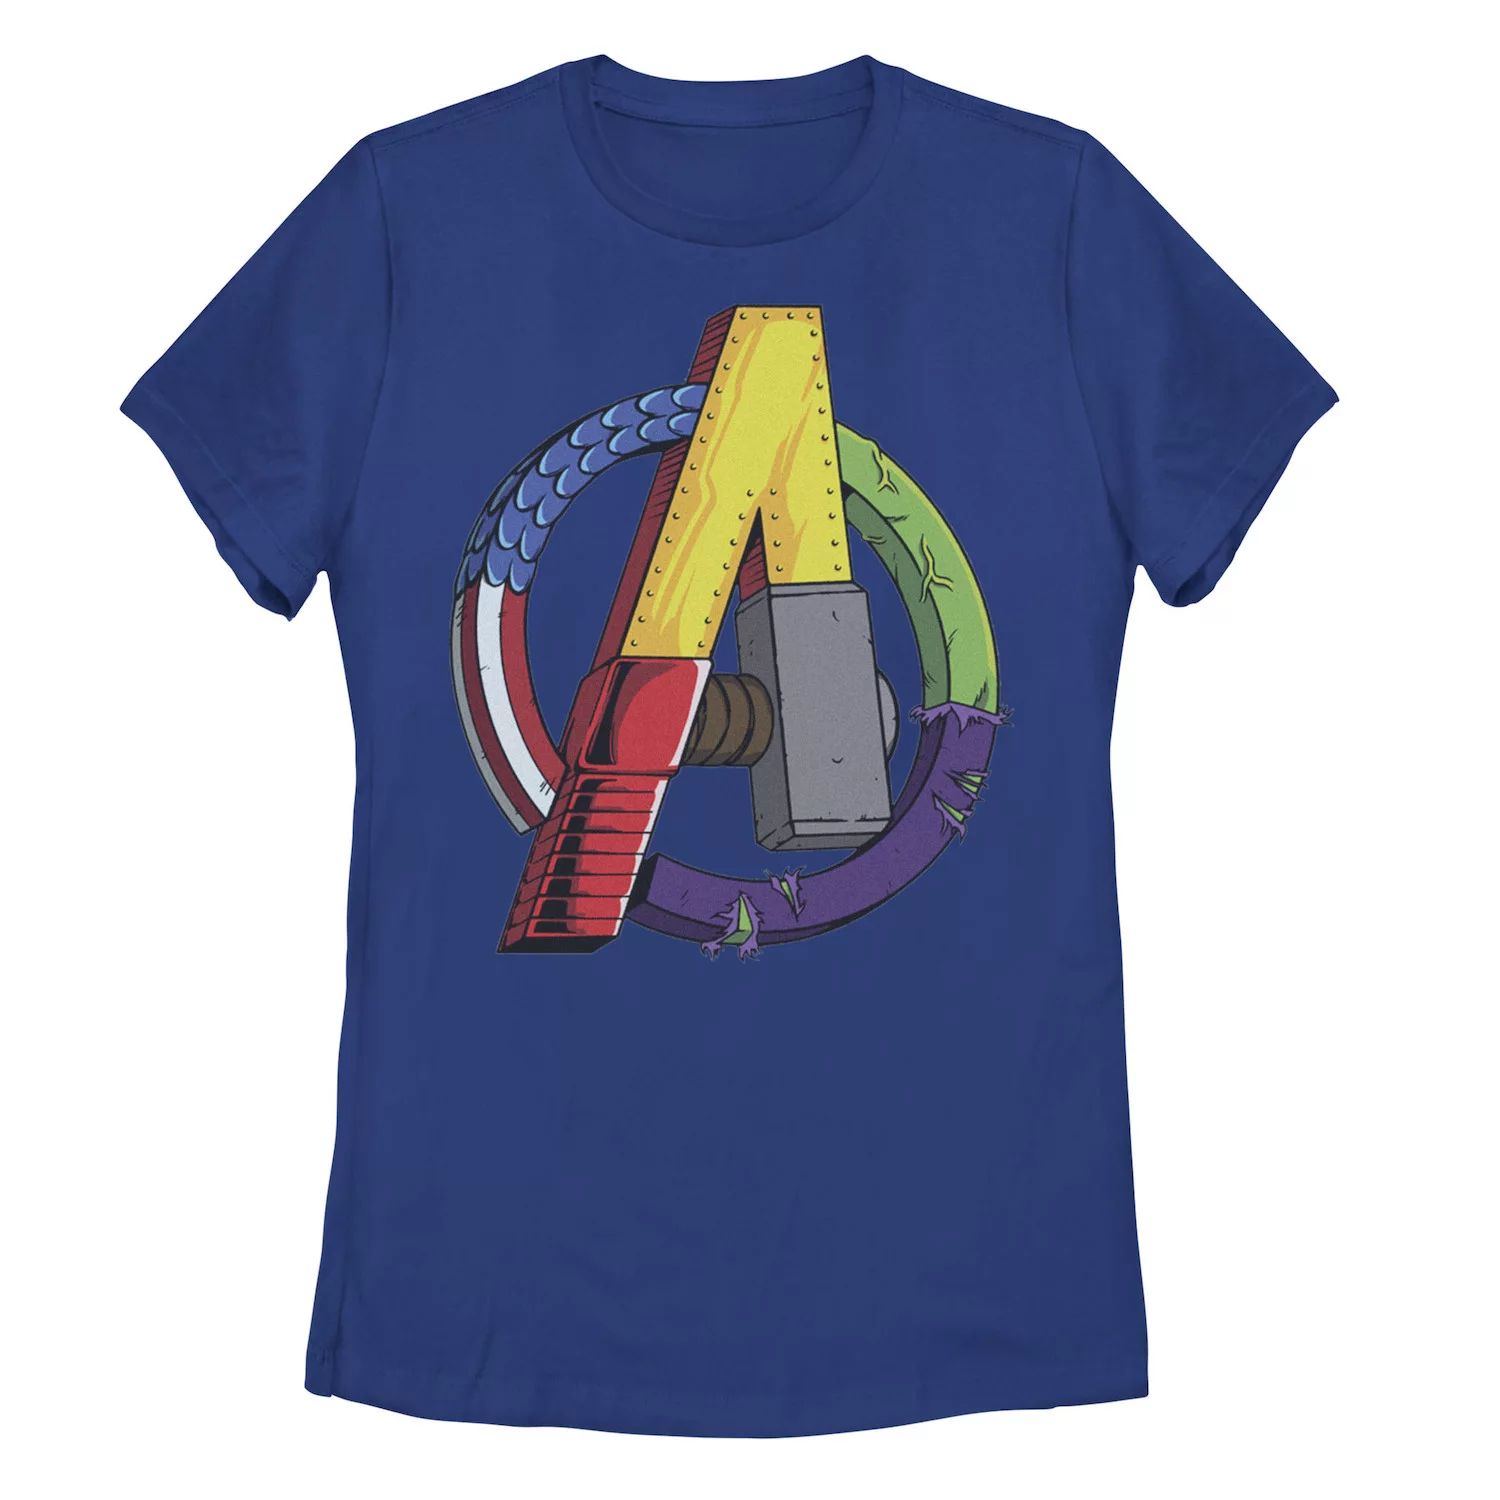 Детская футболка с графическим логотипом и логотипом Marvel Avengers Licensed Character